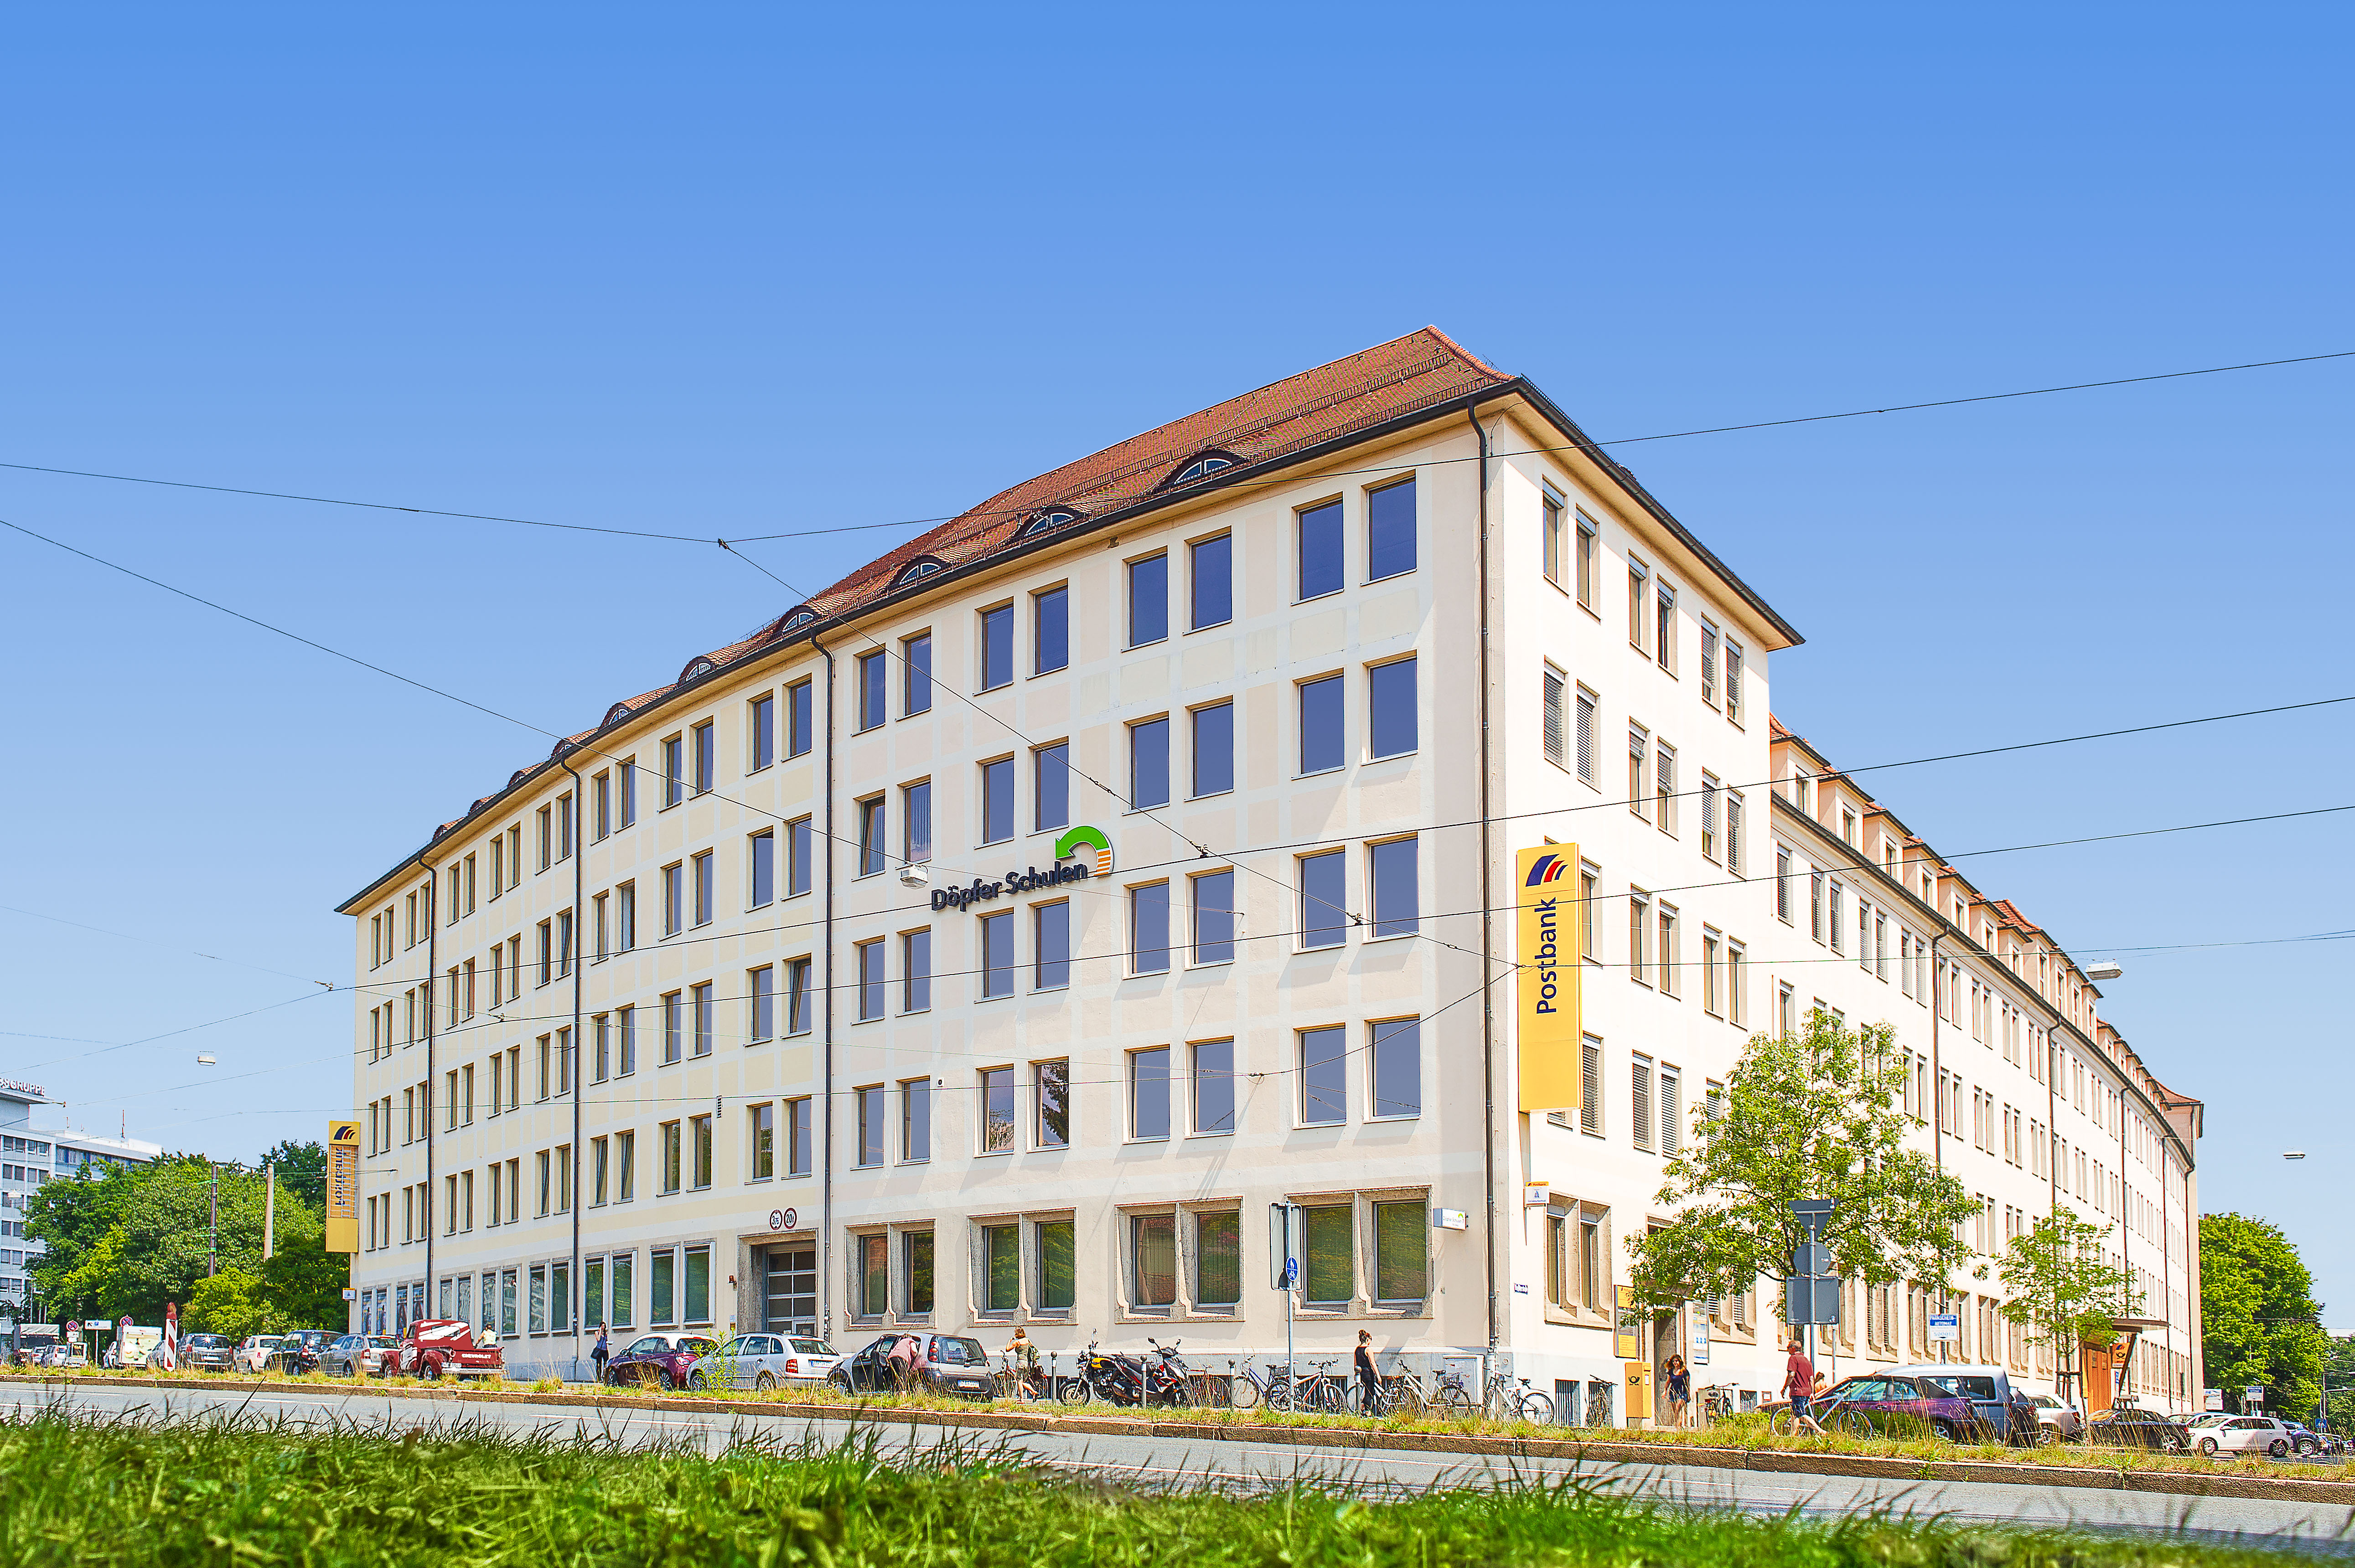 Döpfer Schulen Nürnberg GmbH